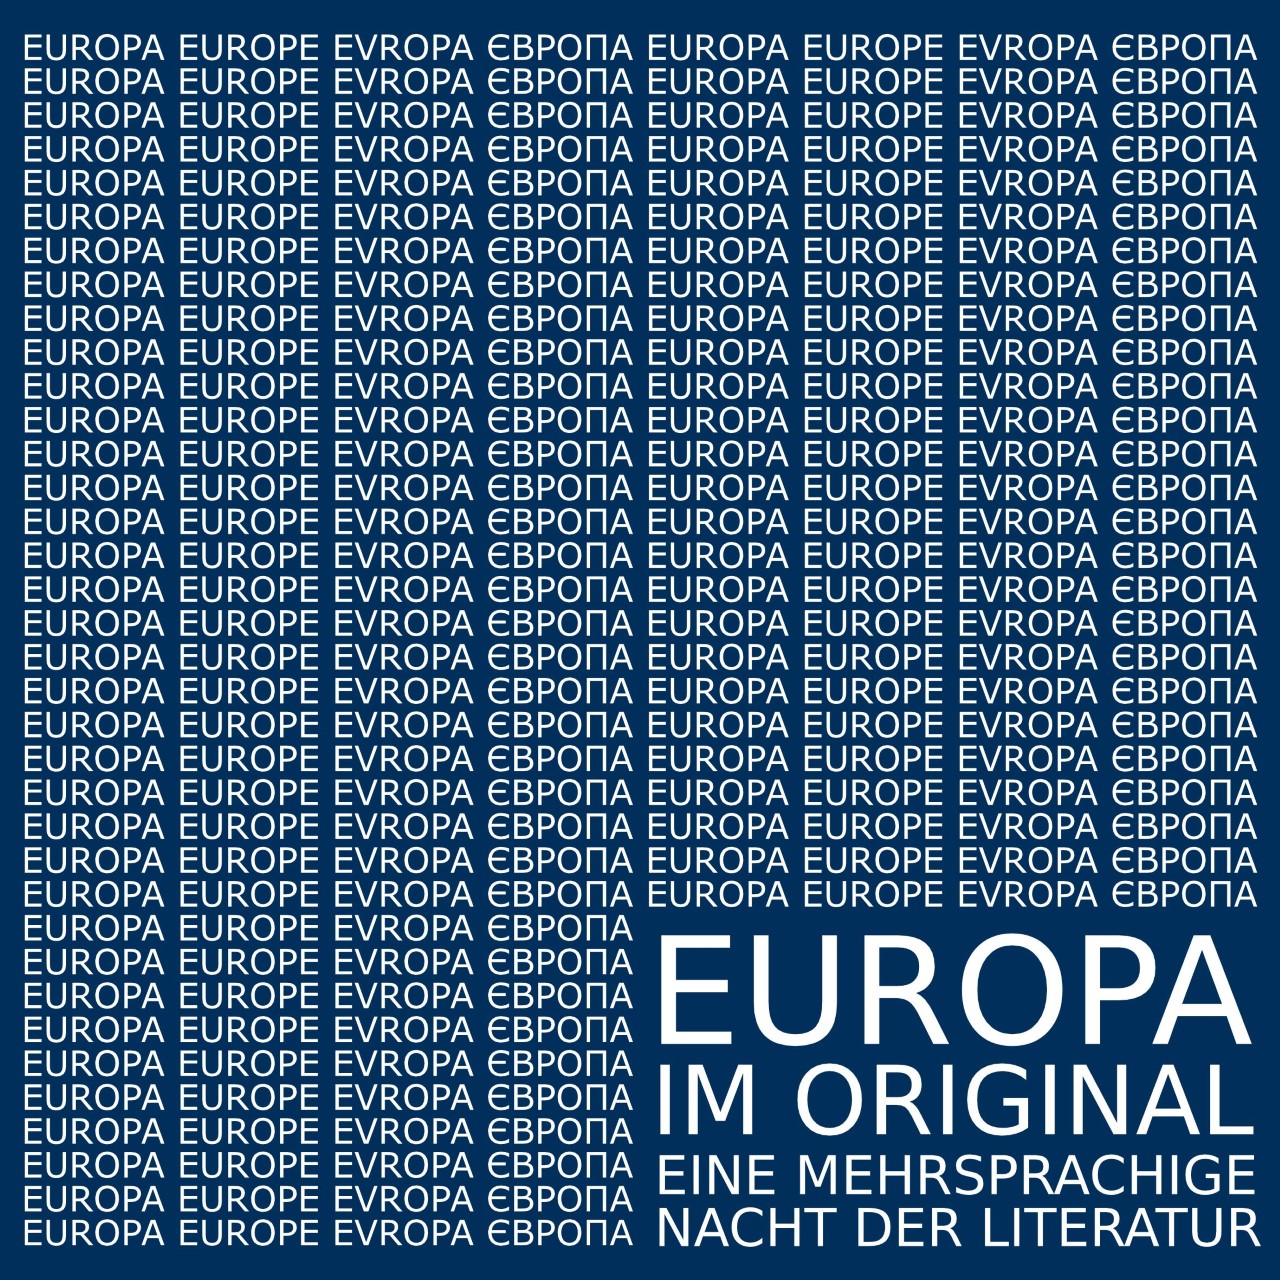 Europa im Original